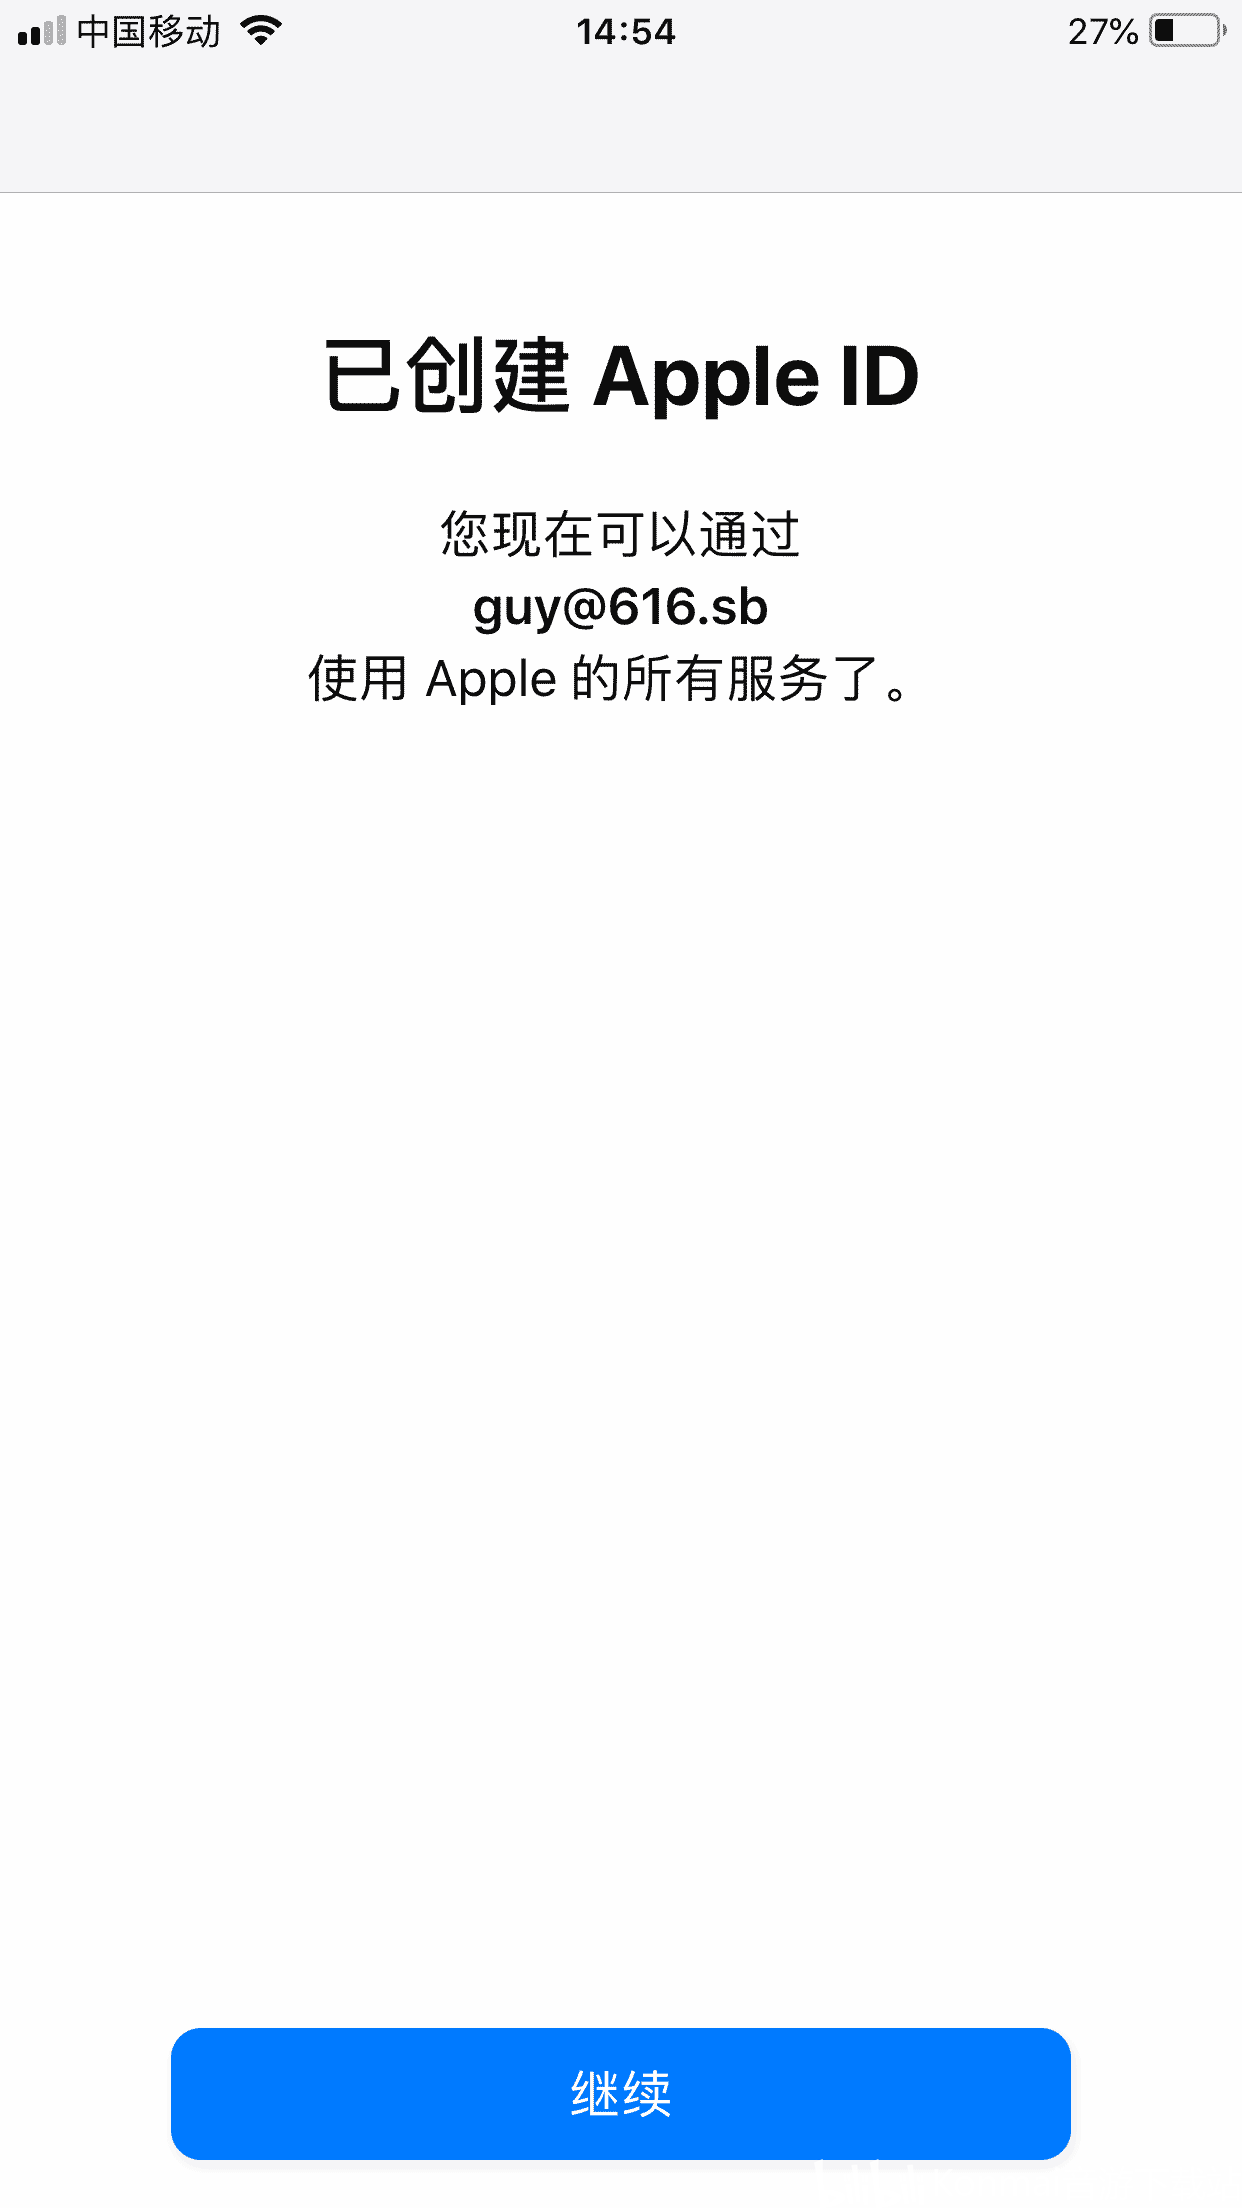 日本id注册资料填写大全_apple id注册 日本_日本乐天注册姓名随便填写